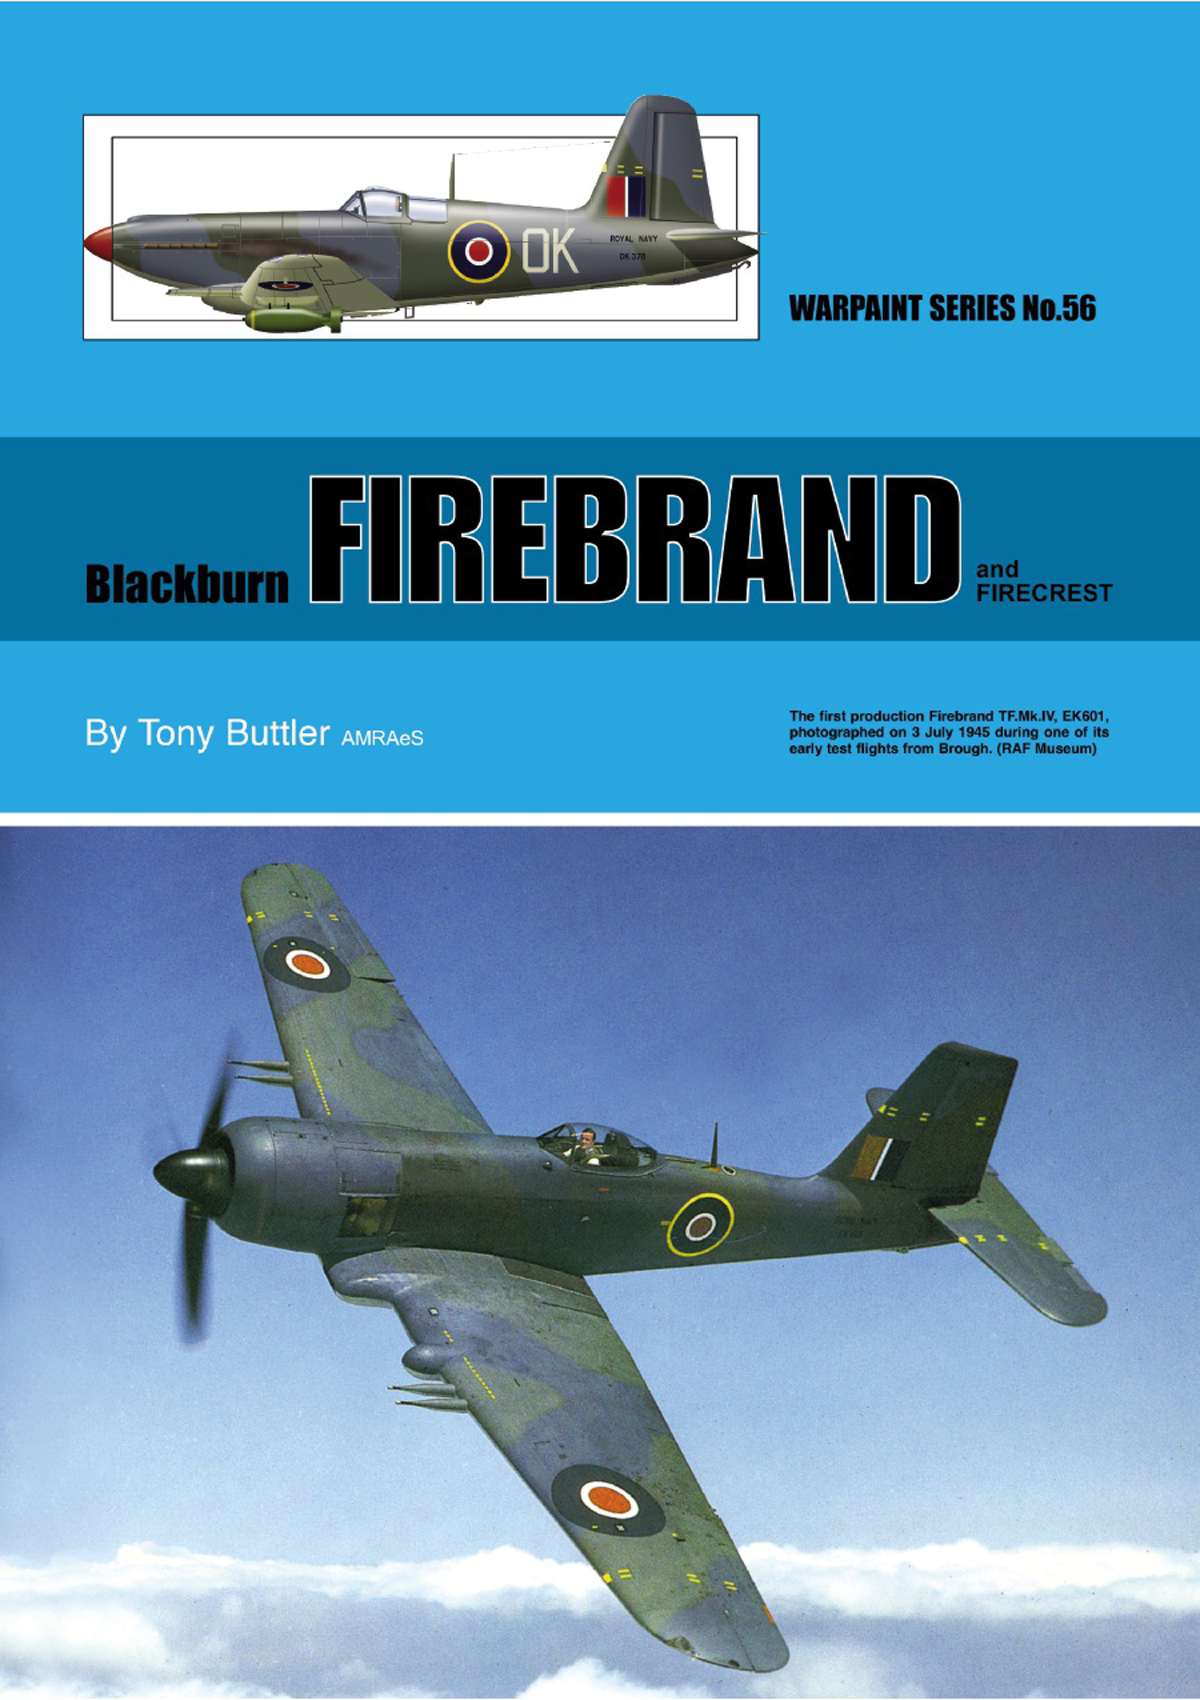 N56 - Blackburn Firebrand and Firecrest